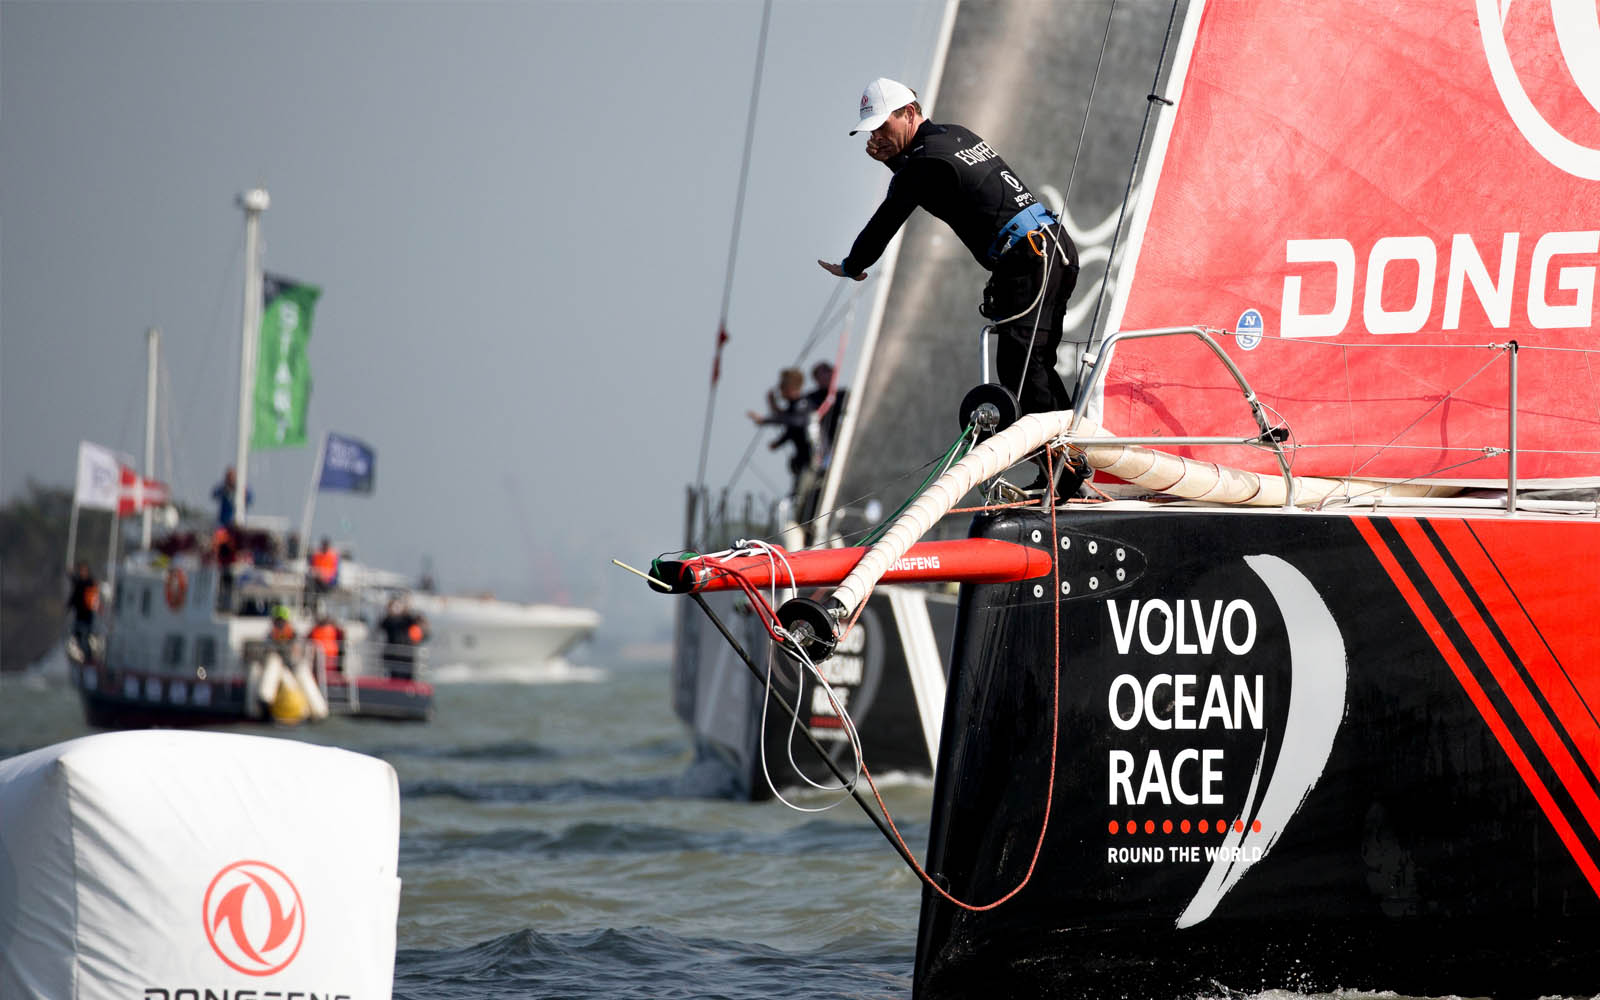 Volvo-Ocean-Race-MAPFRE-volta-a-vencer-regata-costeira-boatshopping